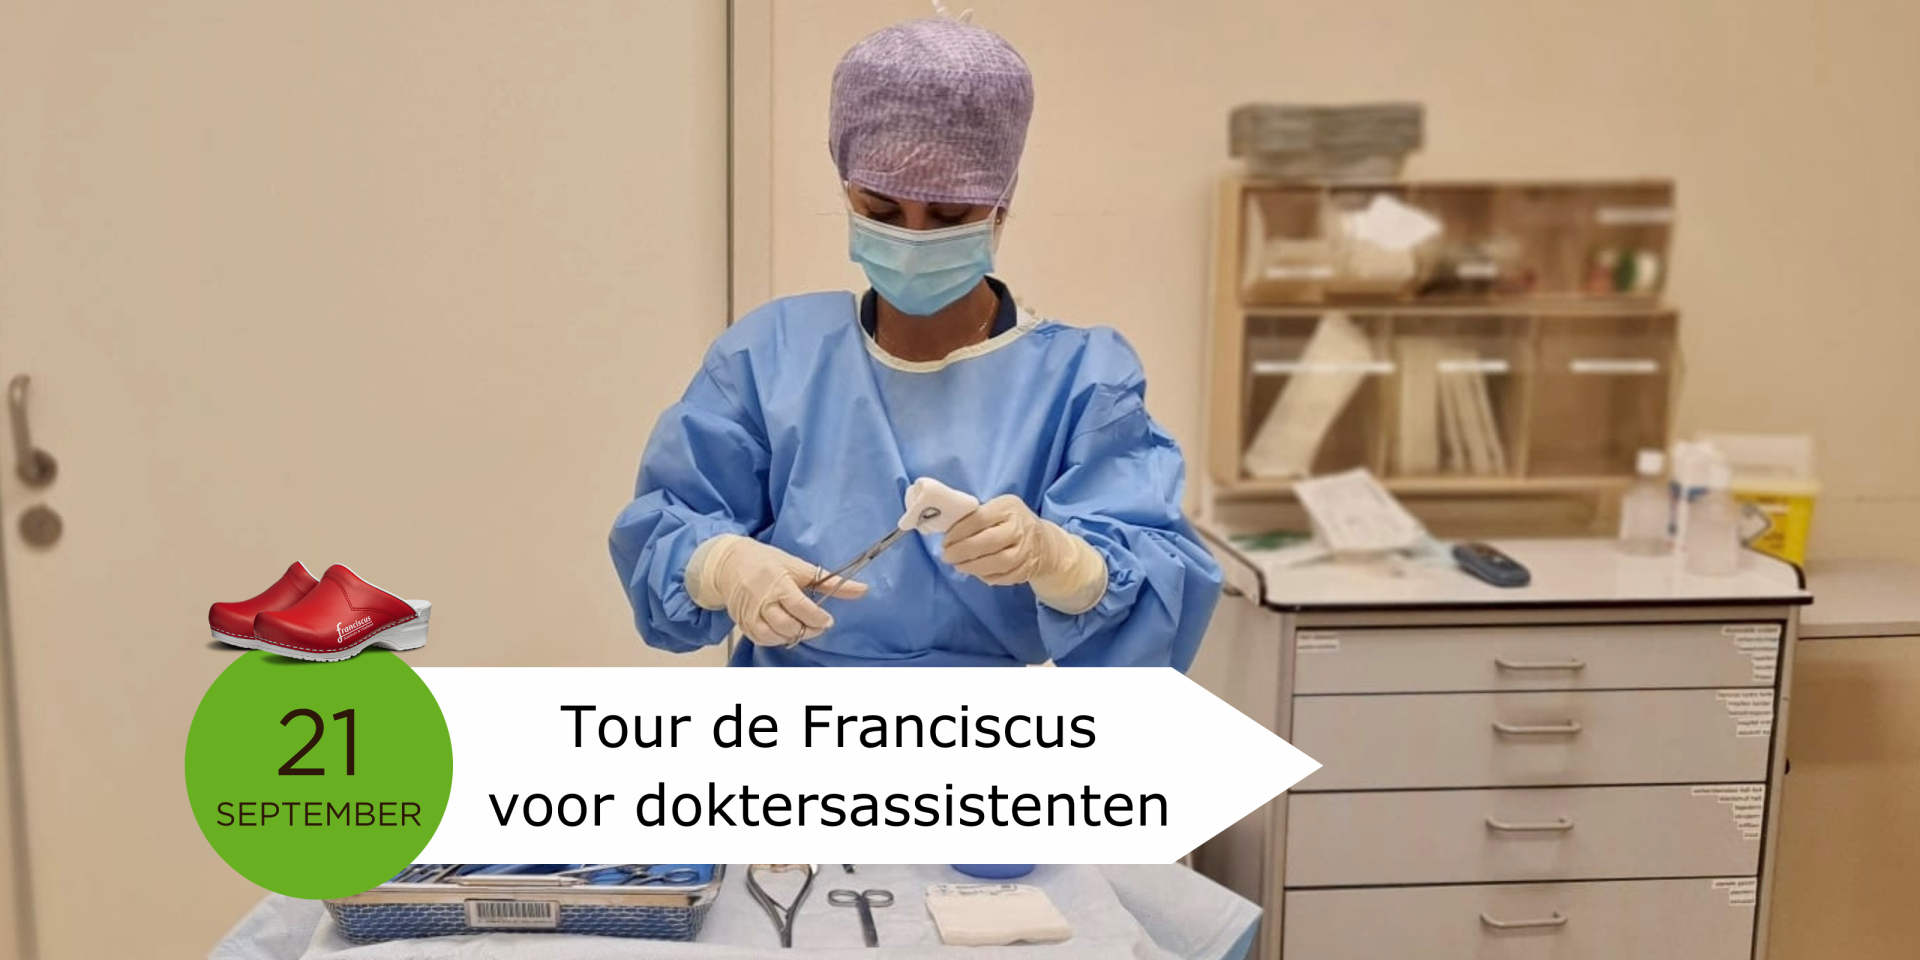 Tour de Franciscus voor doktersassistenten